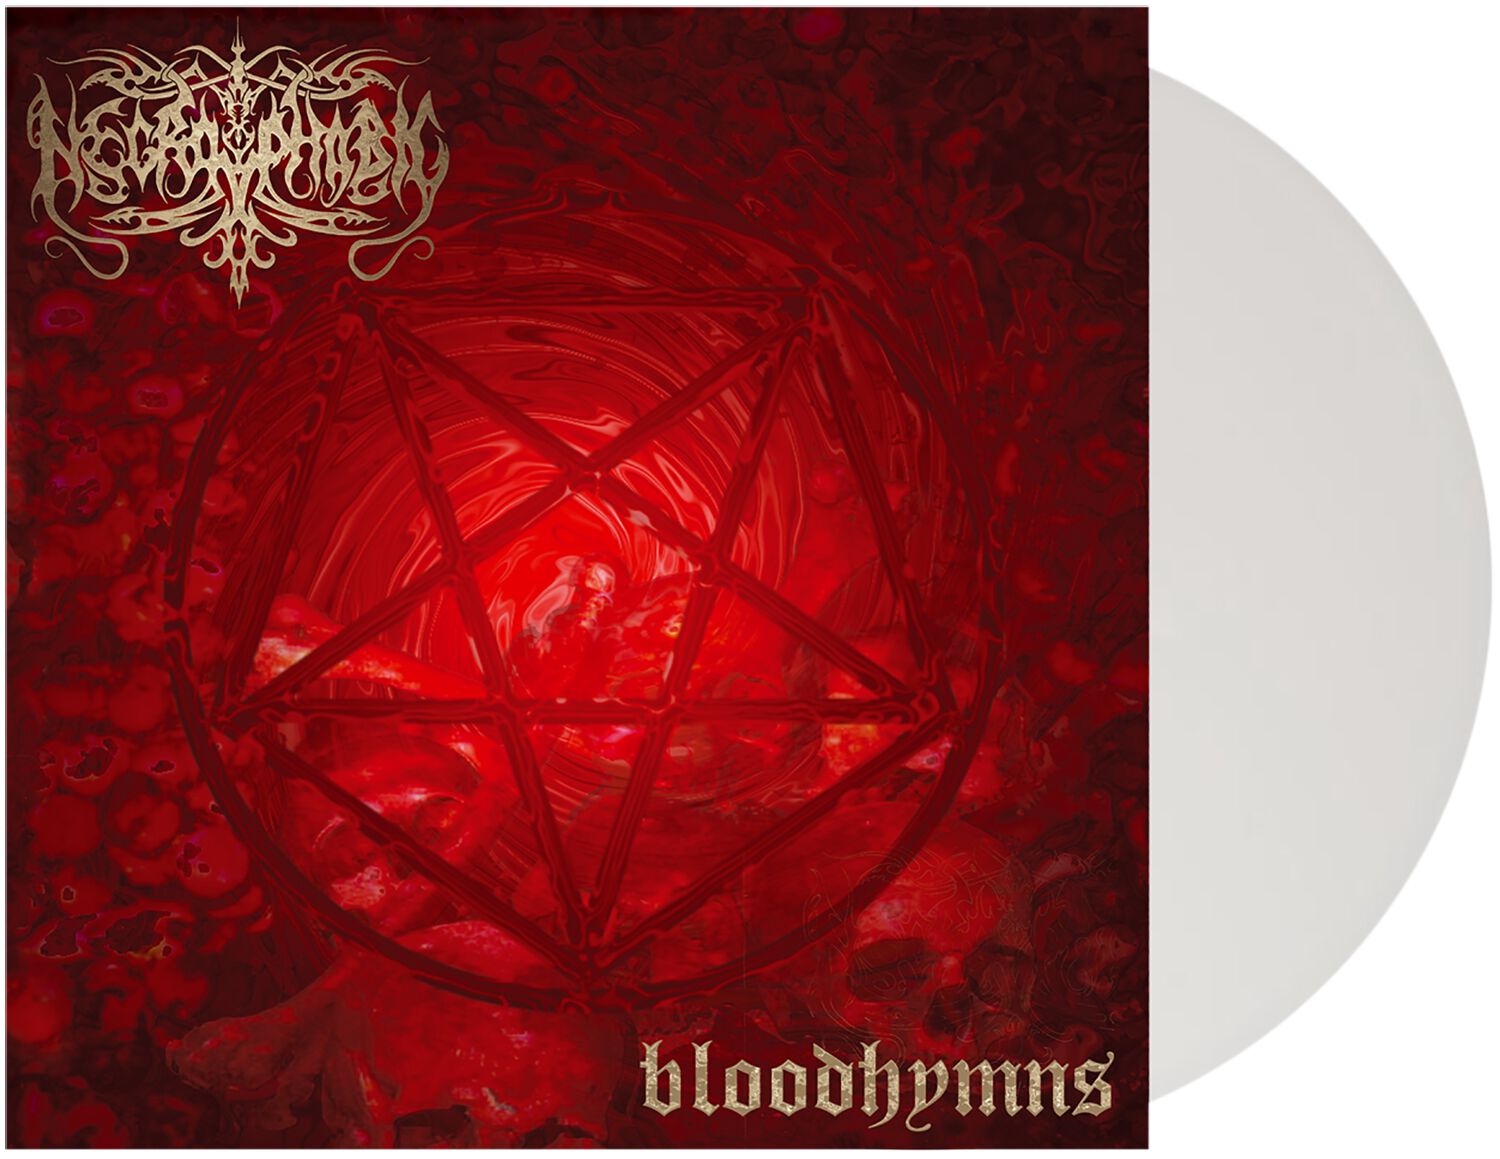 Bloodhymns von Necrophobic - LP (Coloured, Limited Edition, Re-Release, Standard)